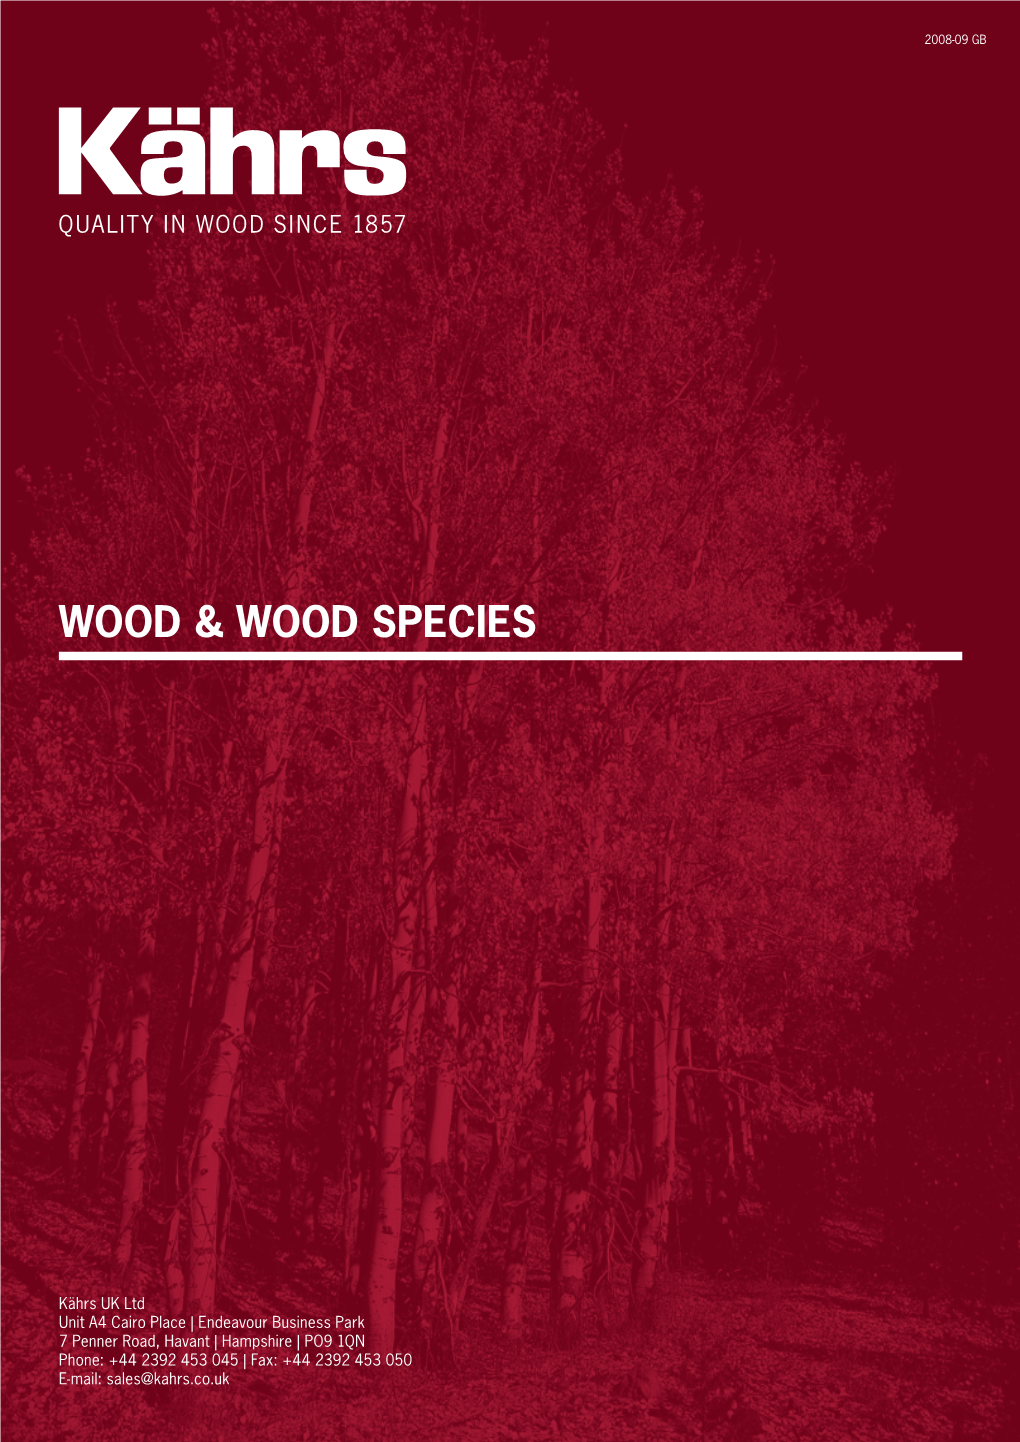 Wood & Wood Species